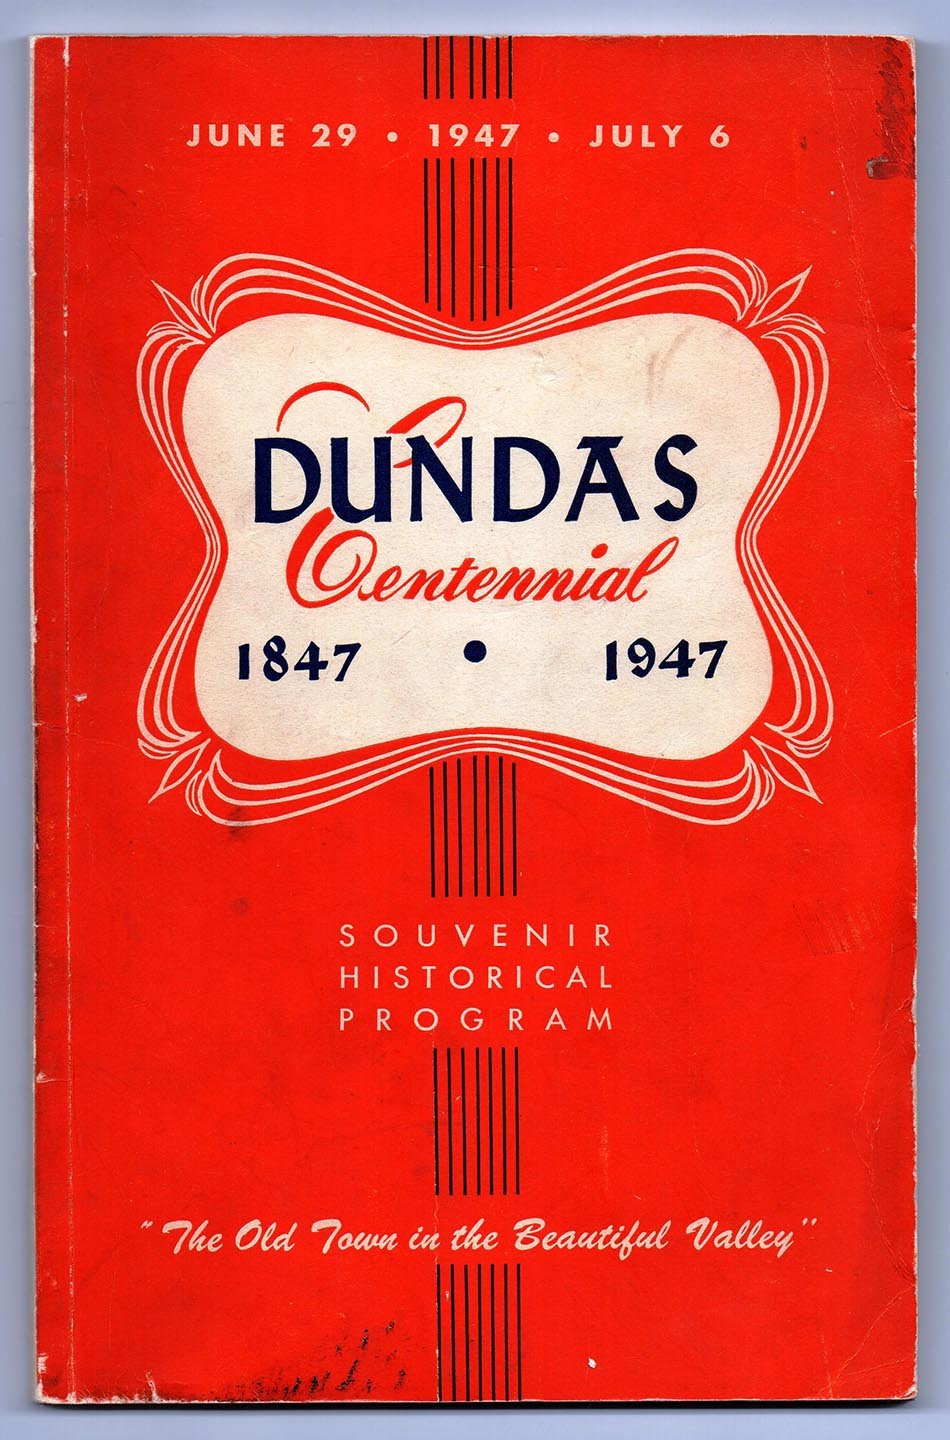 Dundas Centennial 1847-1947 Souvenir Historical Program